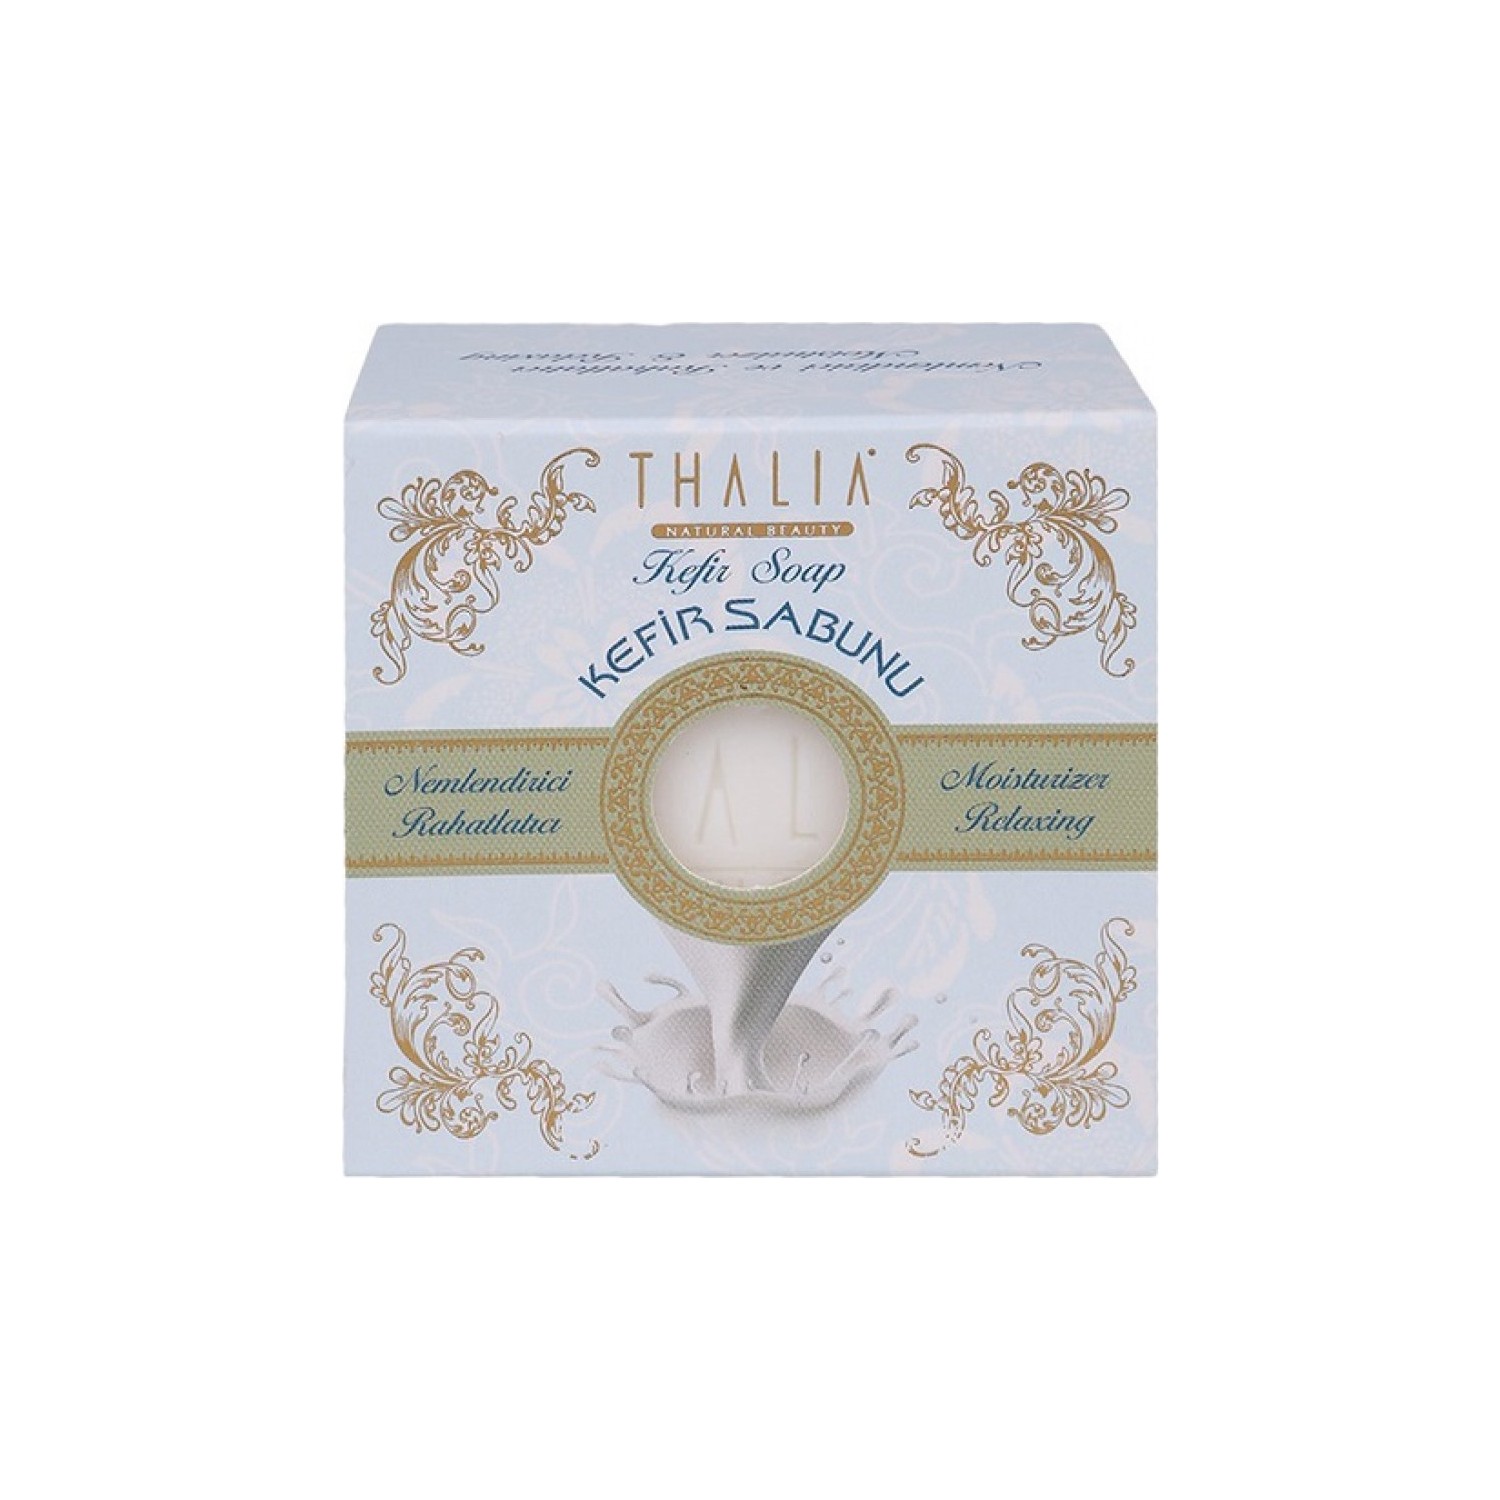 Натуральное мыло Thalia с экстрактом кефира натуральное мыло thalia с экстрактом козьего молока 2 x 150 г